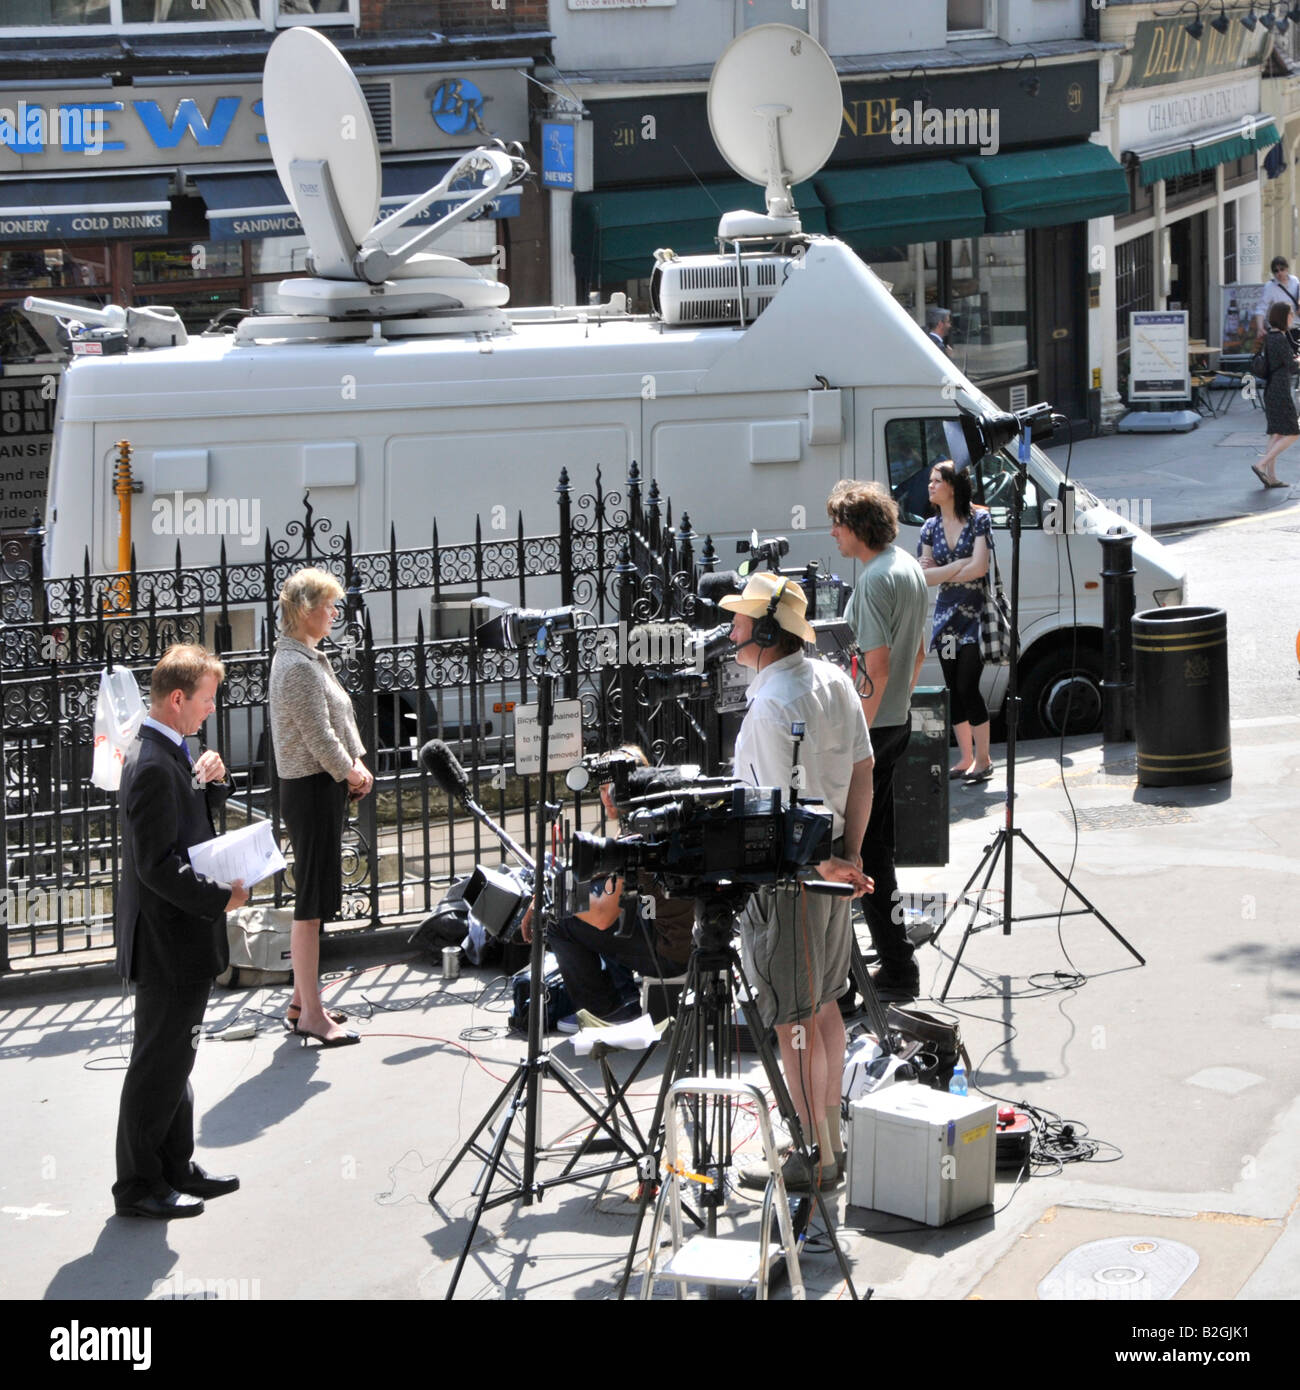 Gegenüber von Royal Courts of Justice Law Courts Journalisten und Reporter mit TV-Kamerateams, die neben der Satellitenschüssel Van London UK Nachrichten schreiben Stockfoto